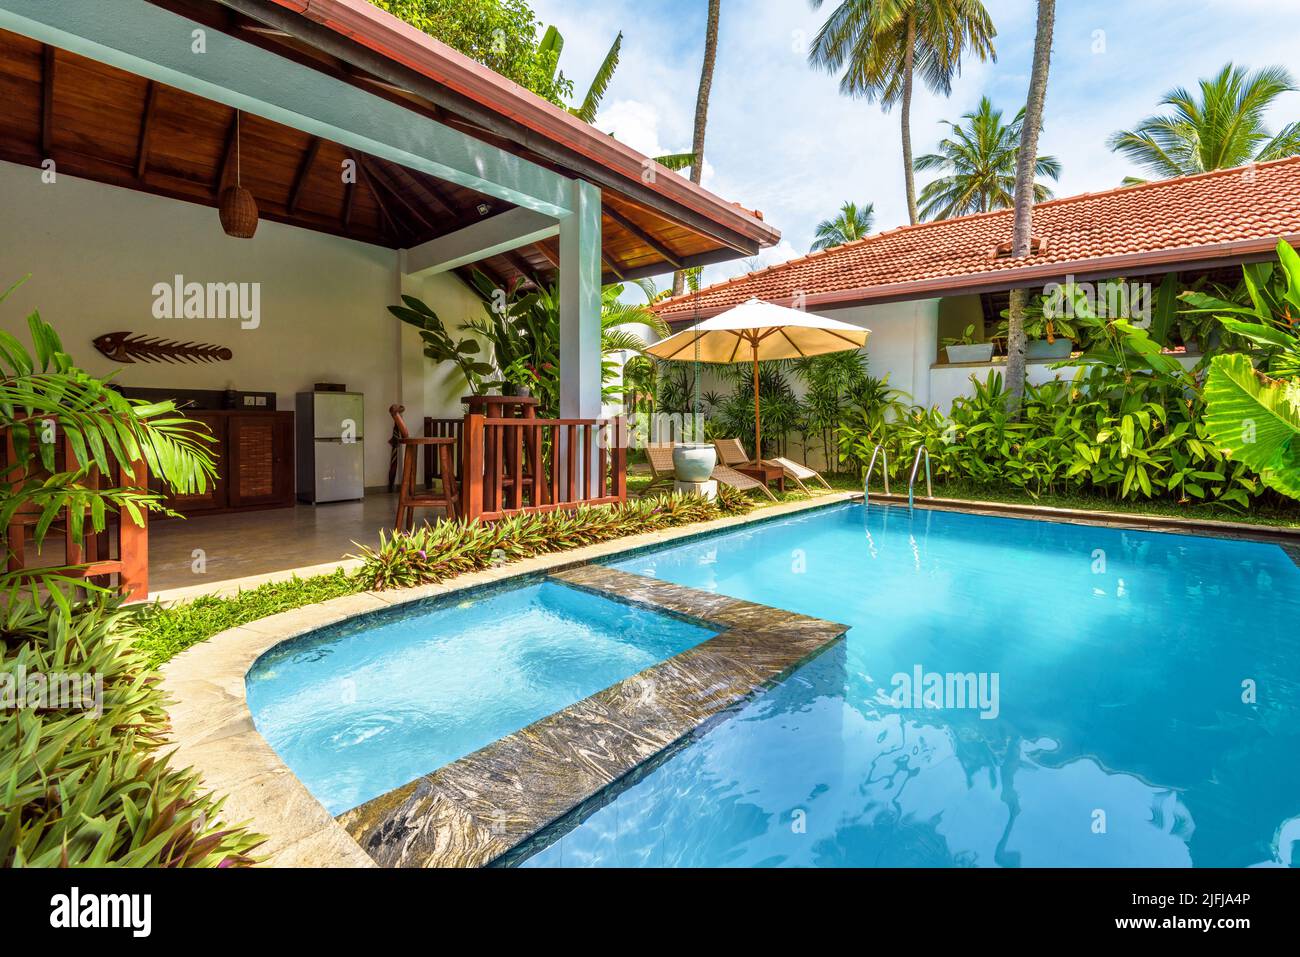 Sri Lanka - Nov 4, 2017: Casa de lujo con piscina y terraza en el patio trasero. Bungalow de estilo indio o caribeño y jardín en patio. Bonita villa en t Foto de stock